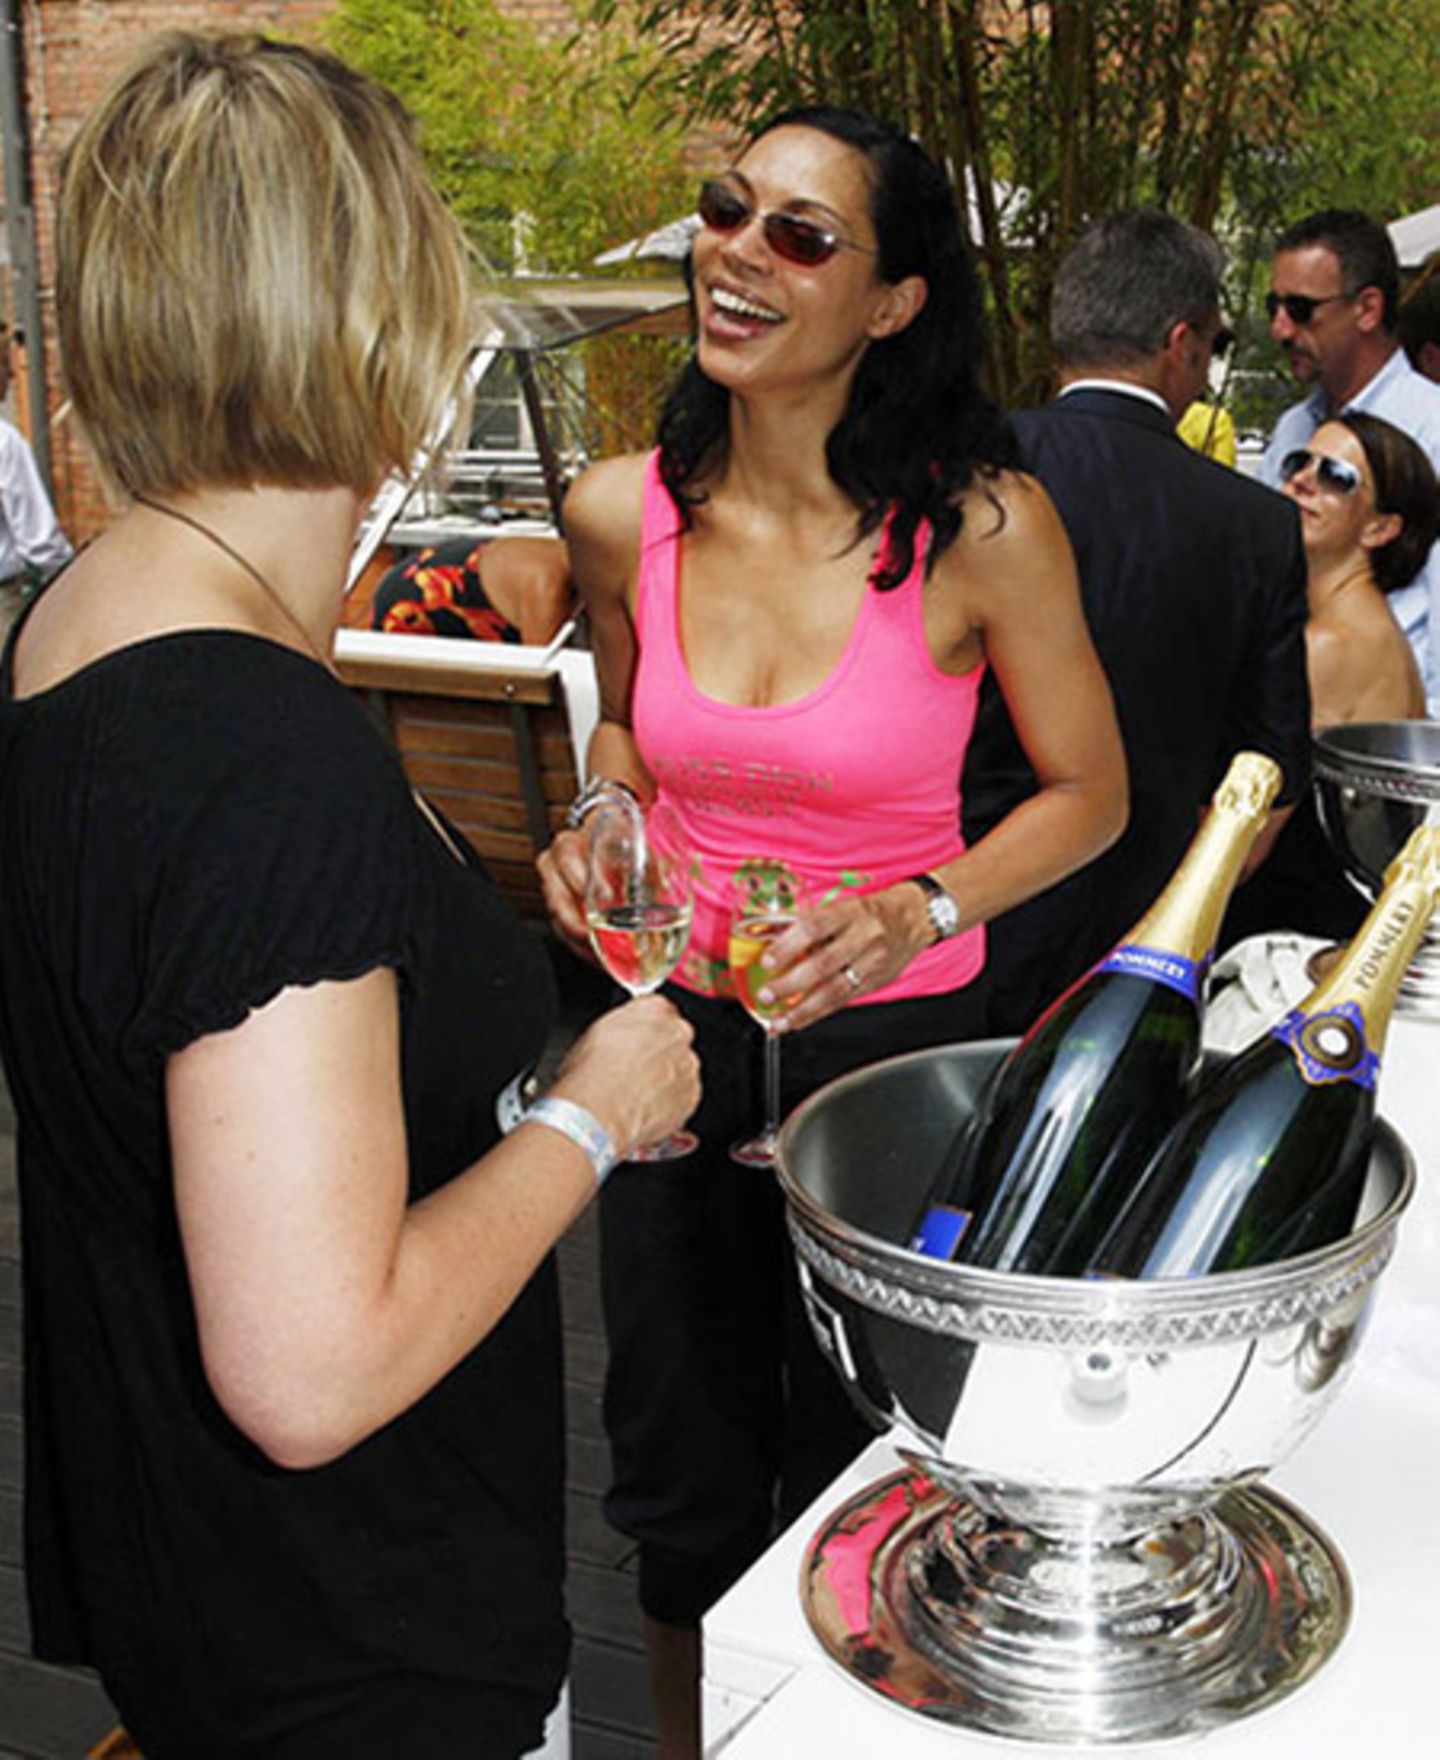 Pommery-Champagner schmeckt auch bei 30 Grad, findet nicht nur Chantal de Freitas.